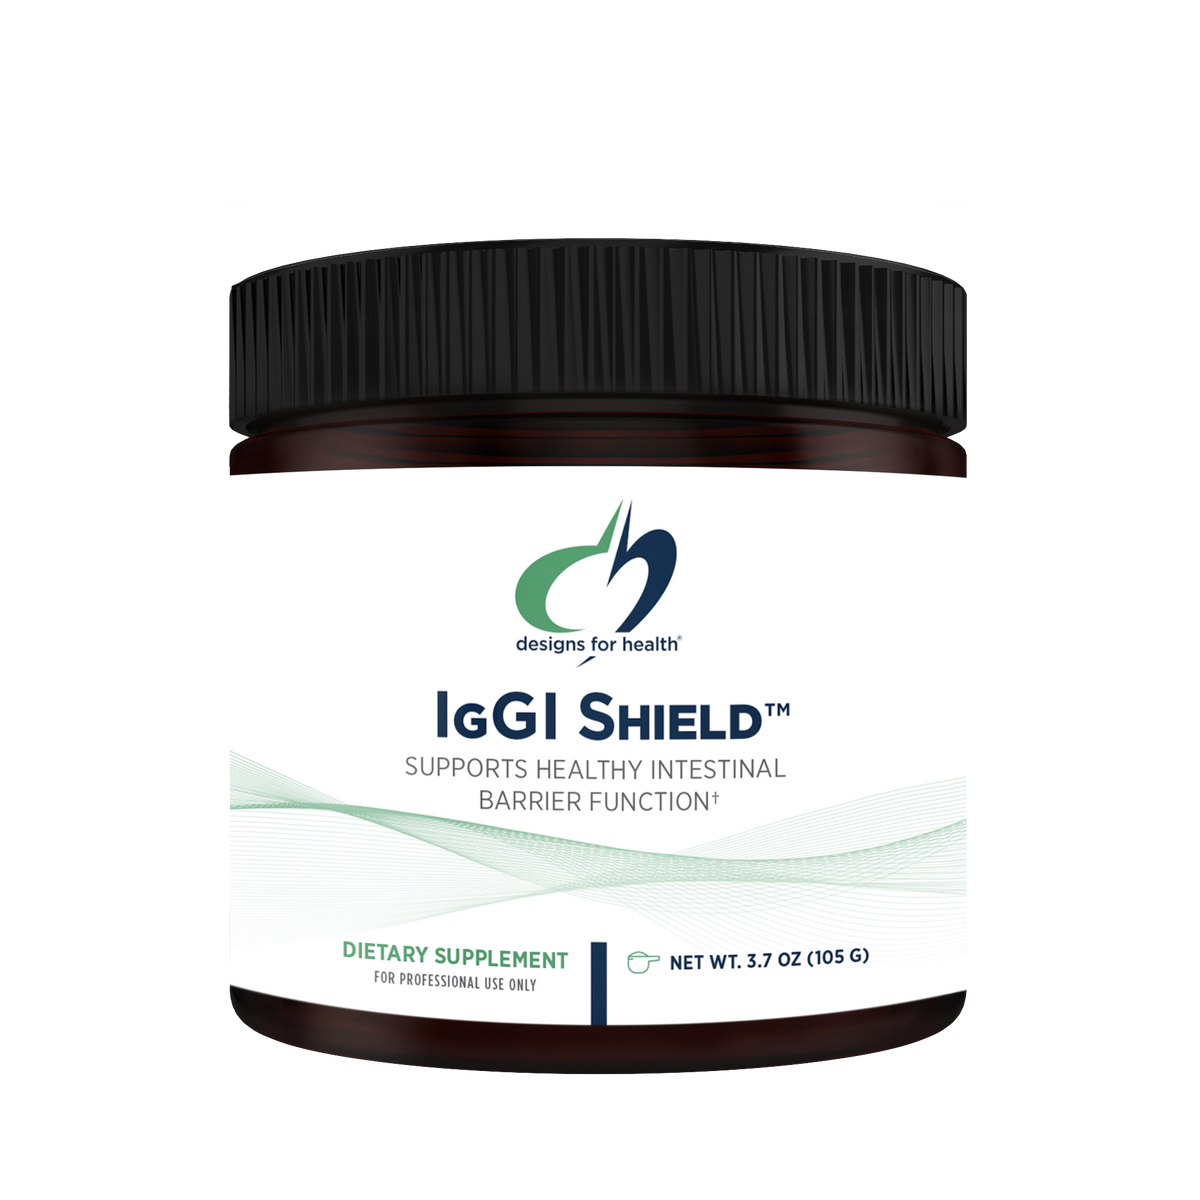 Iggi Shield